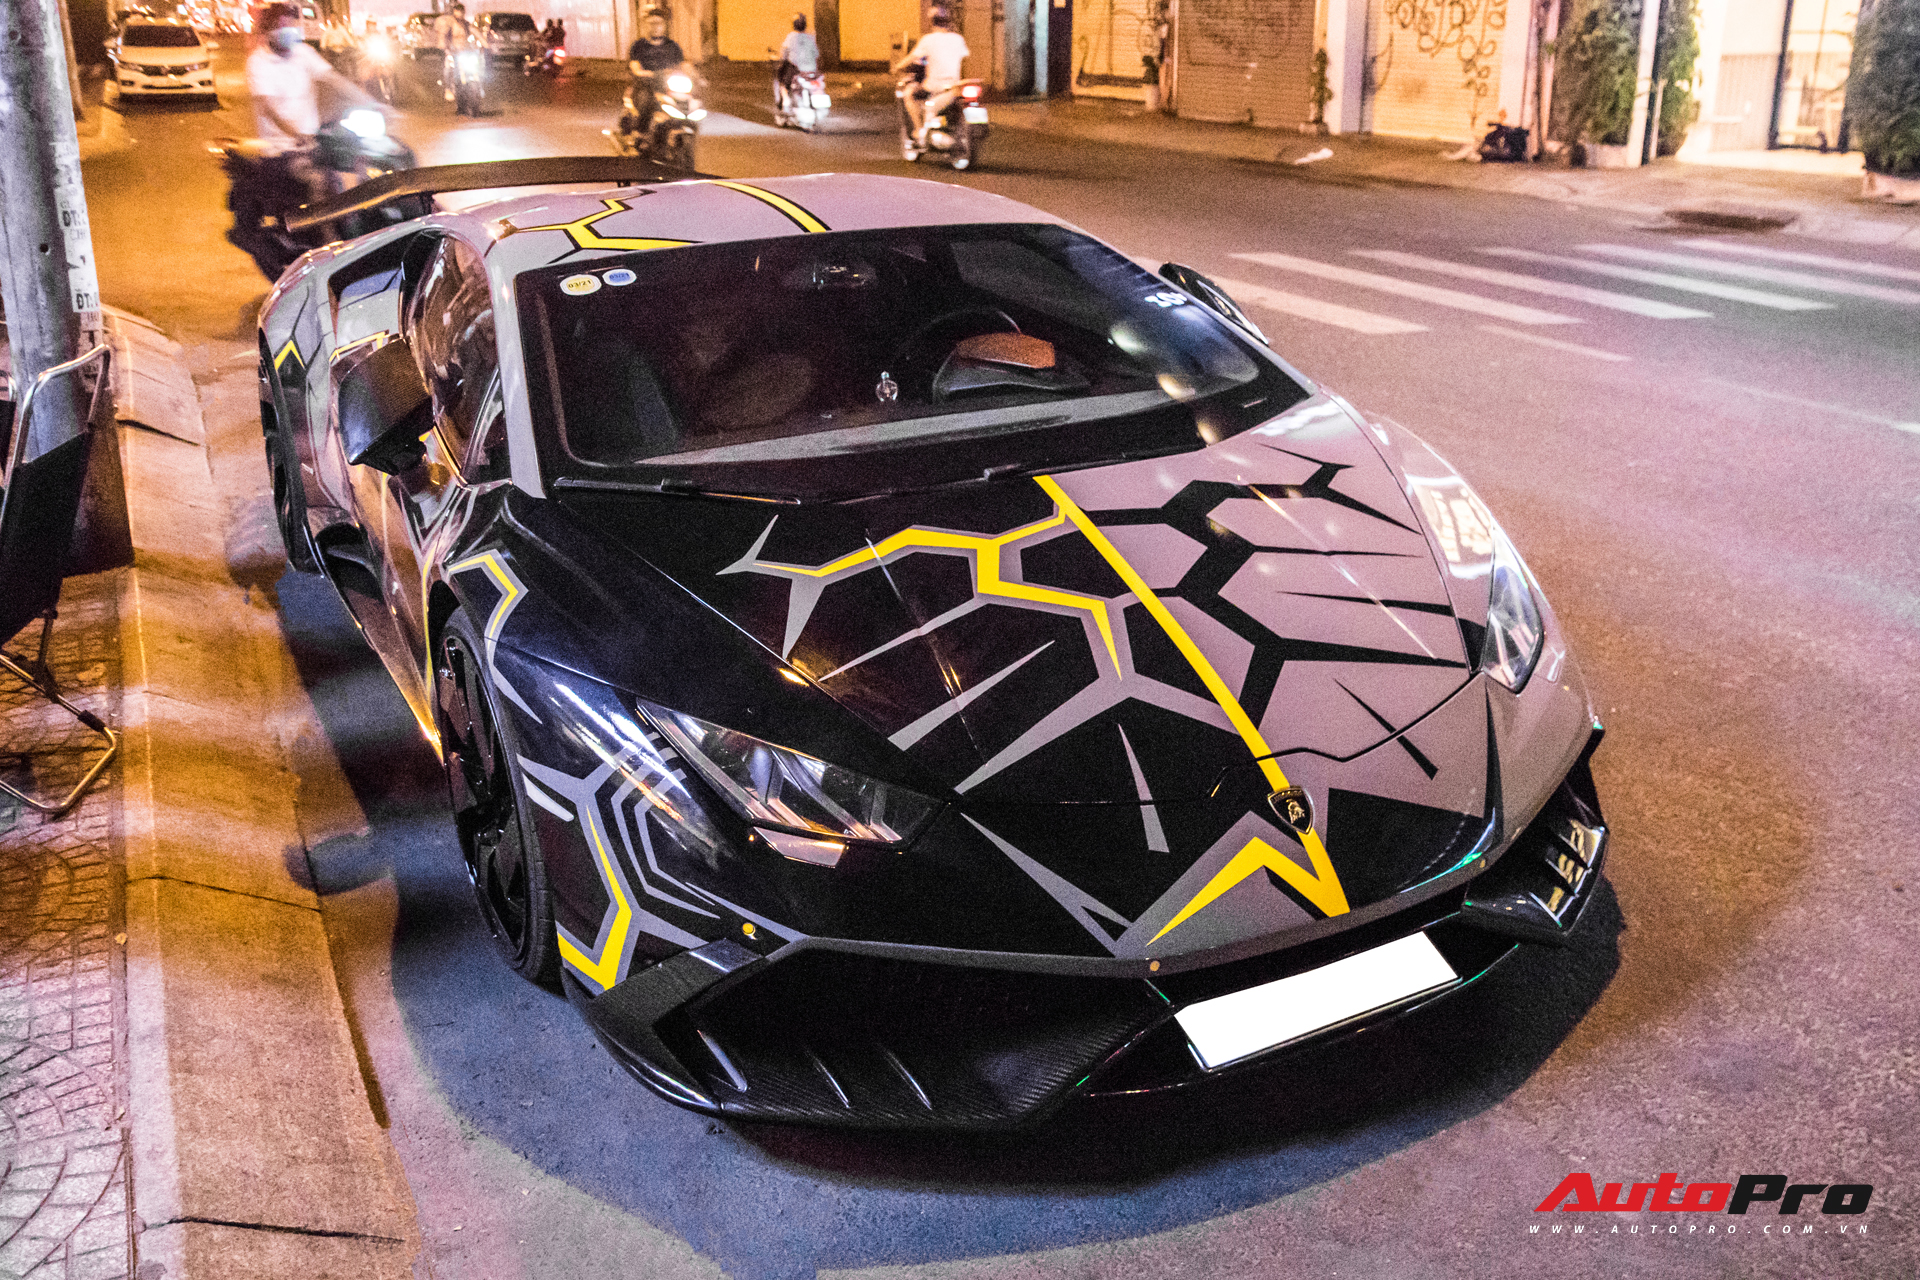 Cận cảnh Lamborghini Huracan độ Mansory lột xác với phong cách rạn nứt tại Sài Gòn - Ảnh 3.